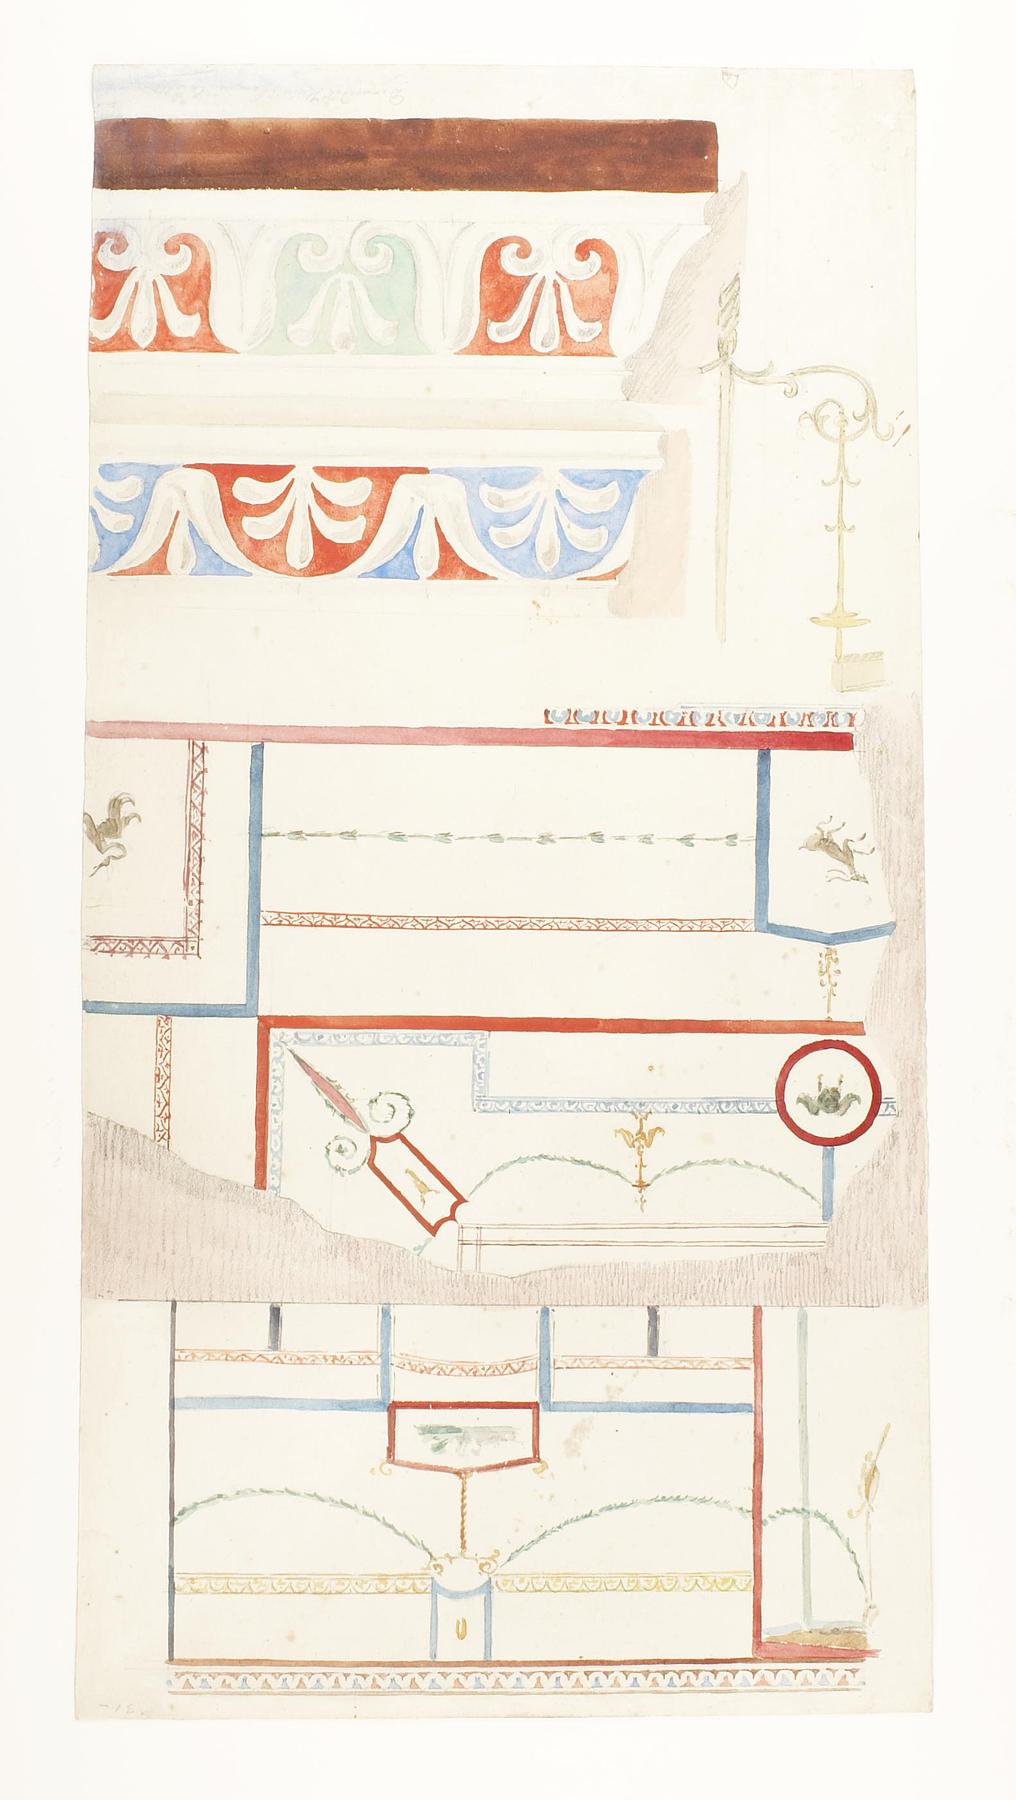 Vægudsmykning, loftdekoration og ornament, detaljer fra Diomedes Hus, D1814